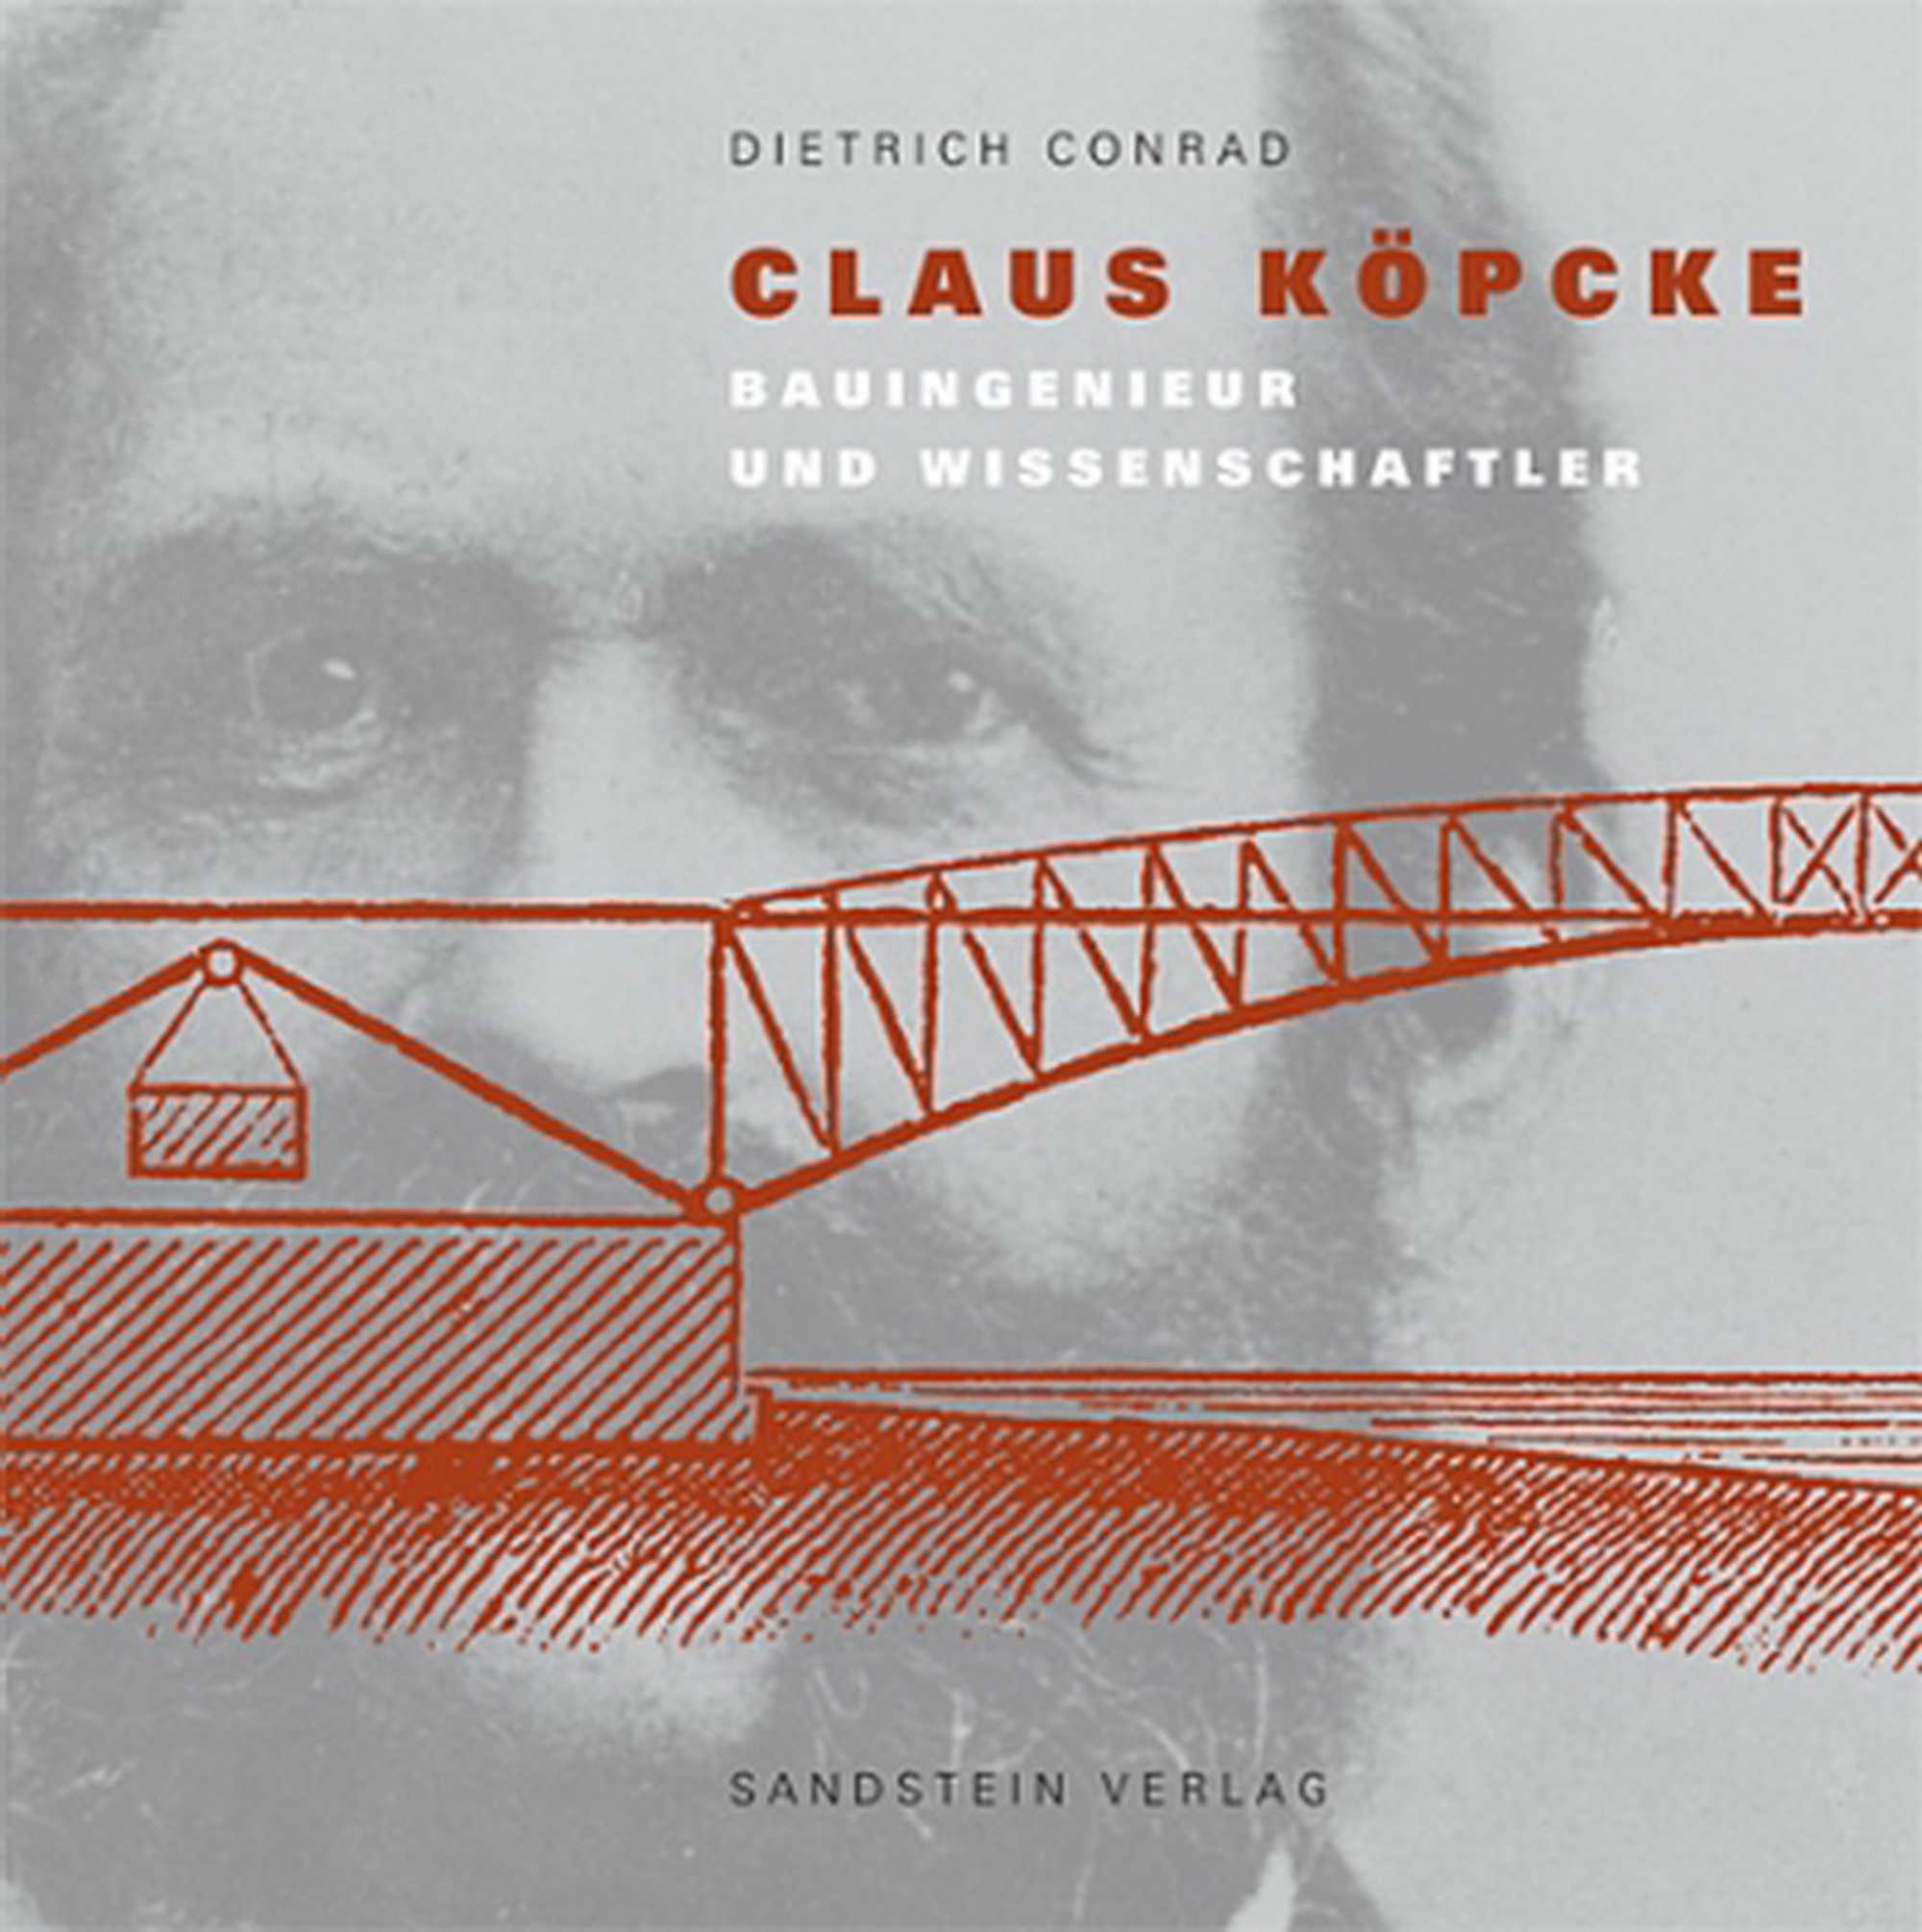 Cover Buch "Claus Köpcke - Bauingenieur und Wissenschaftler"